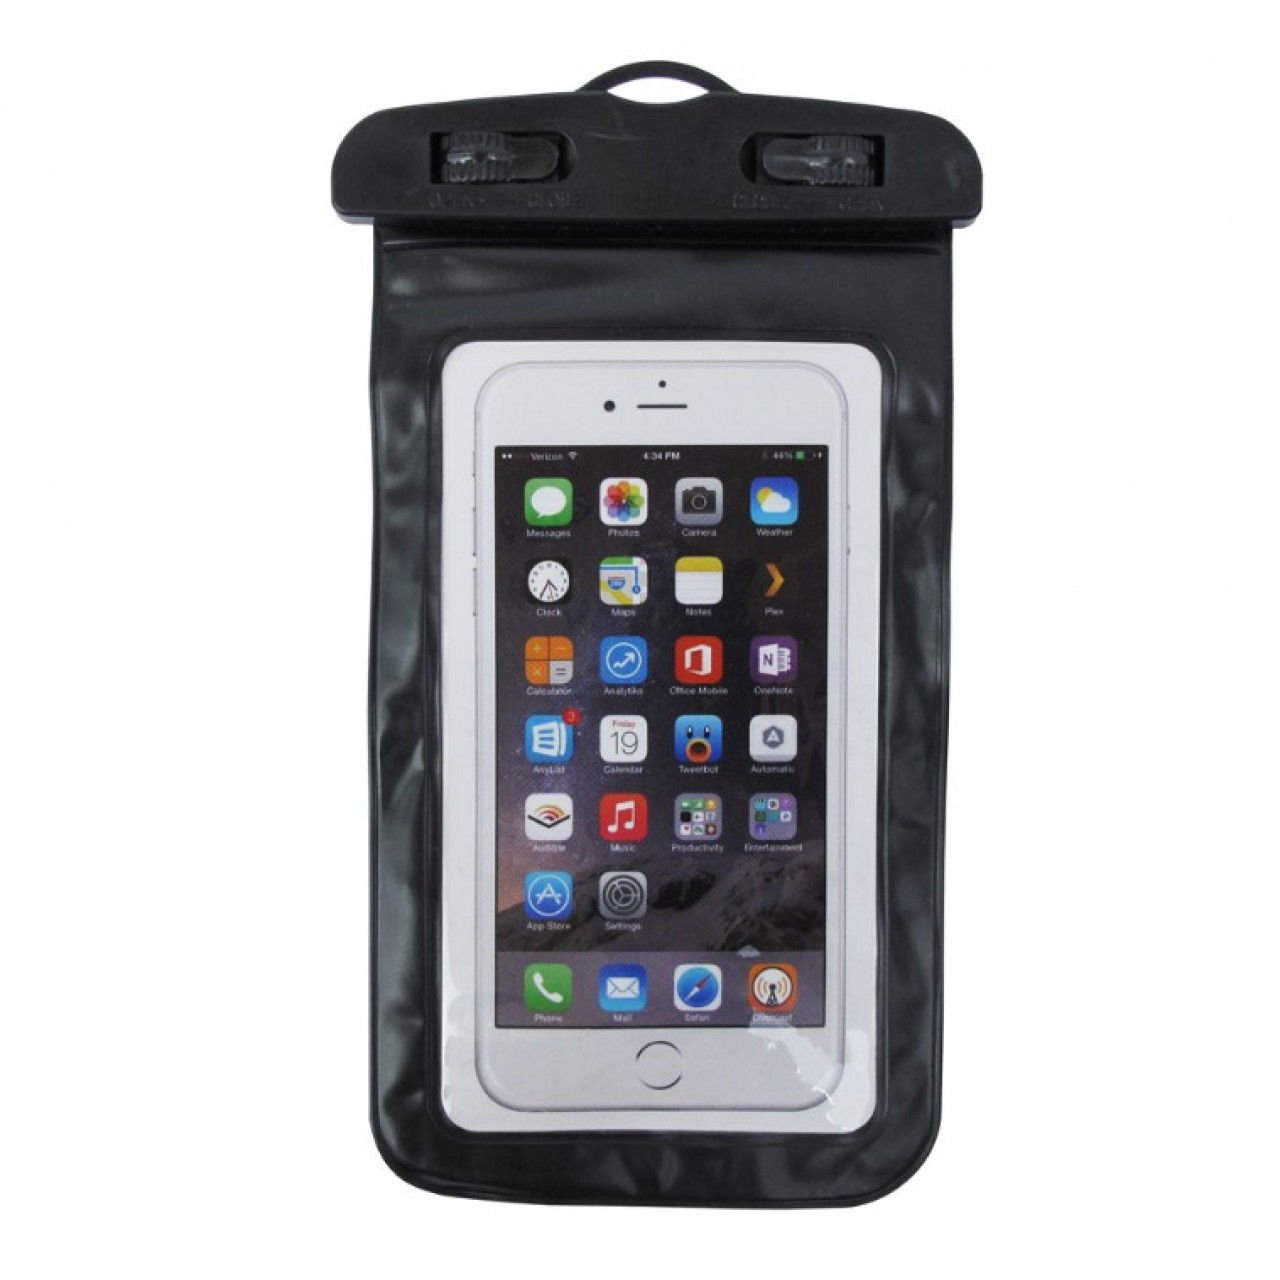 θήκη Universal Αδιάβροχη Πλαστική για κινητό έως 6 ίντσες - 4761 - Μαύρο - OEM